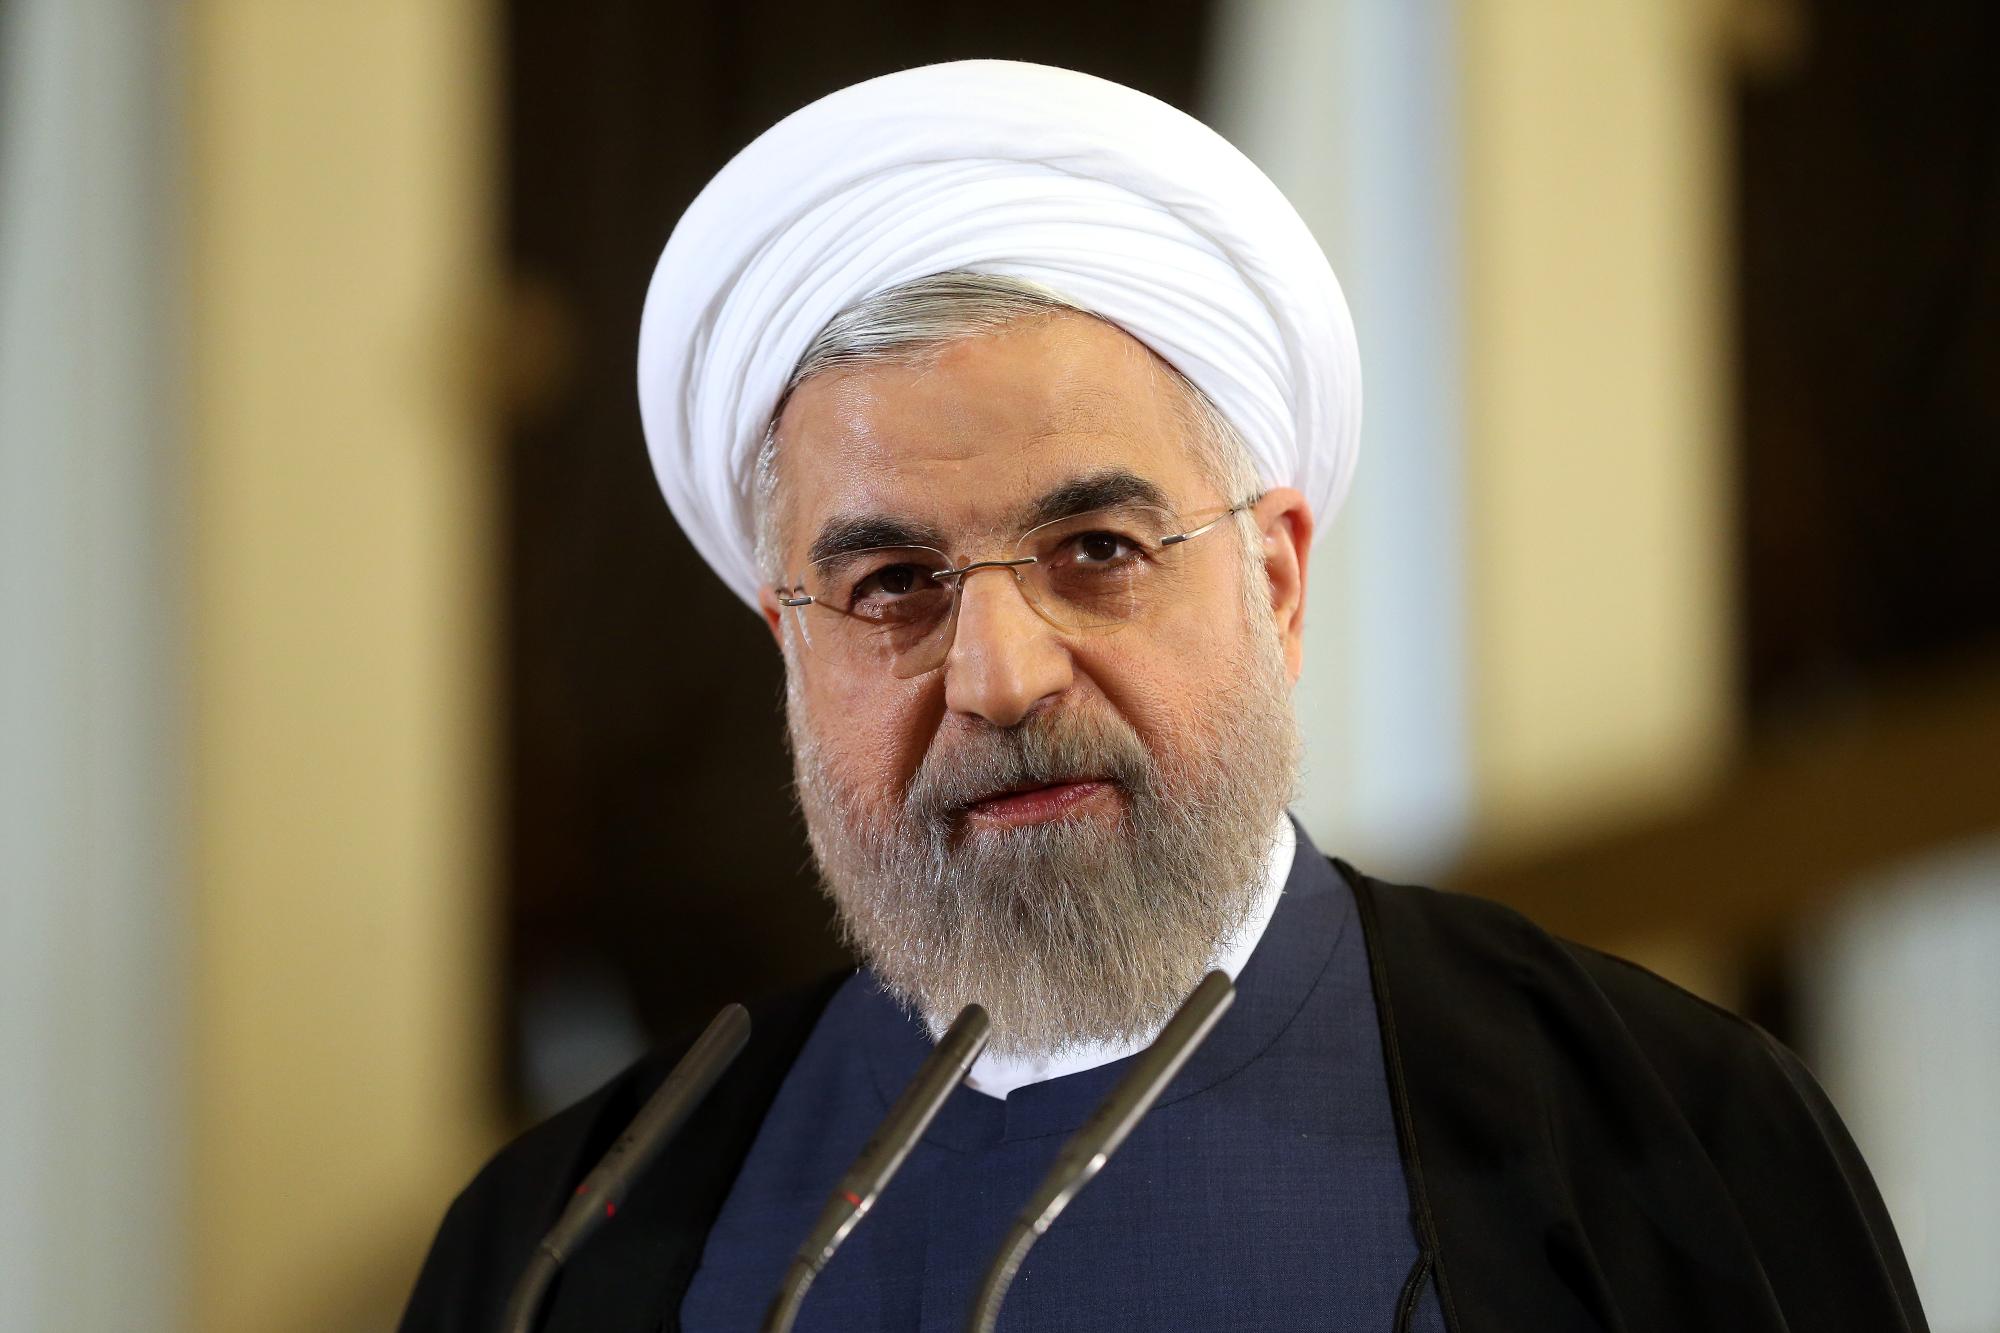  Róháni: Irán kész együttműködni, ha a többi fél is teljesíti kötelezettségeit